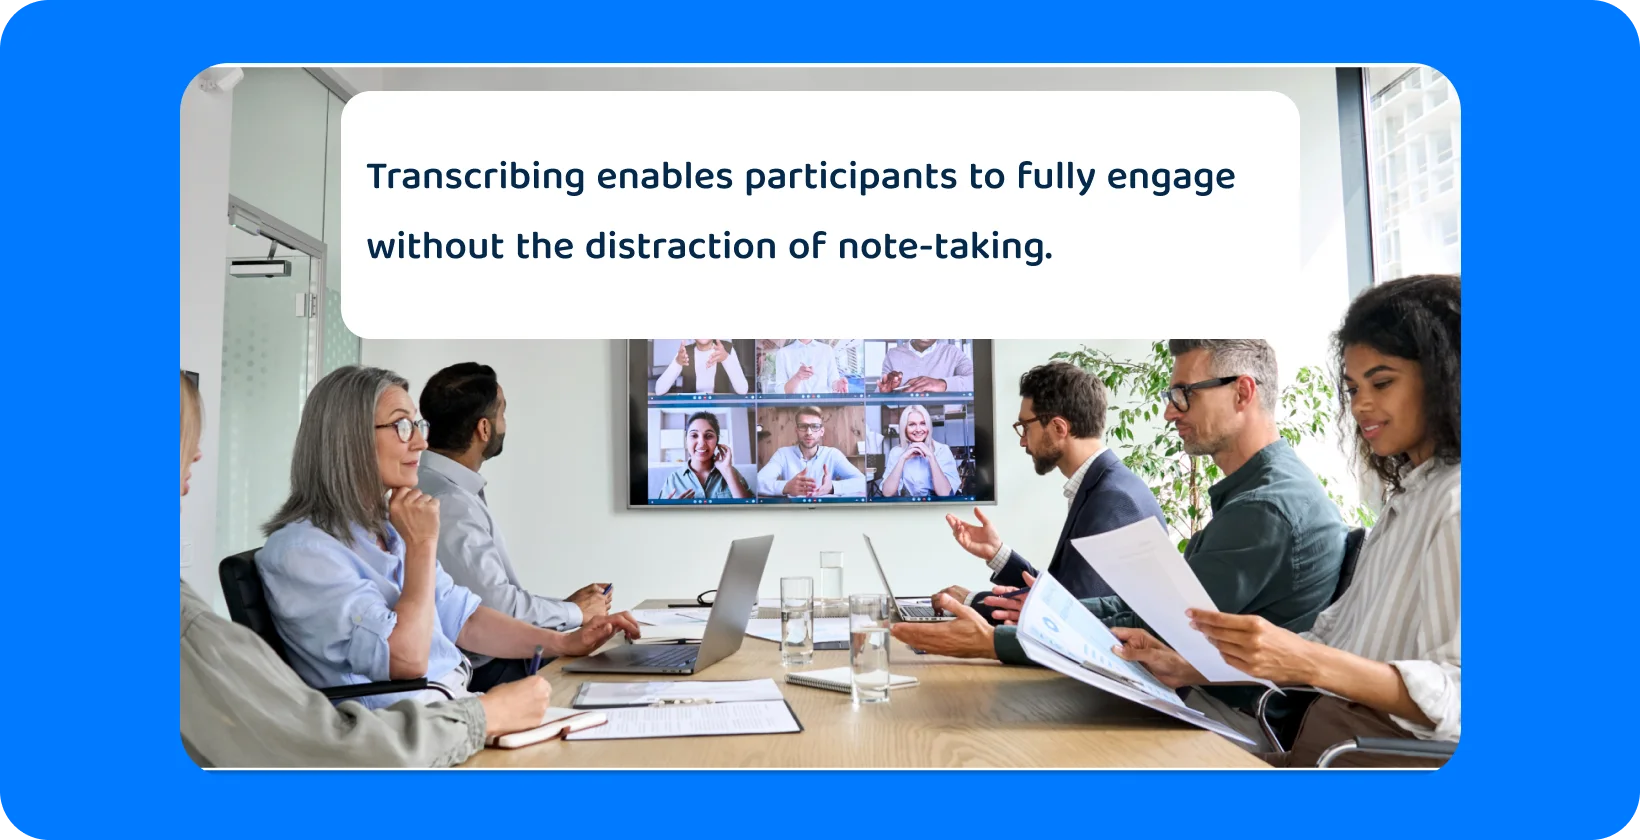 Întâlnire de echipă cu participanți în persoană și virtuali, subliniind necesitatea unei transcrieri cuprinzătoare.